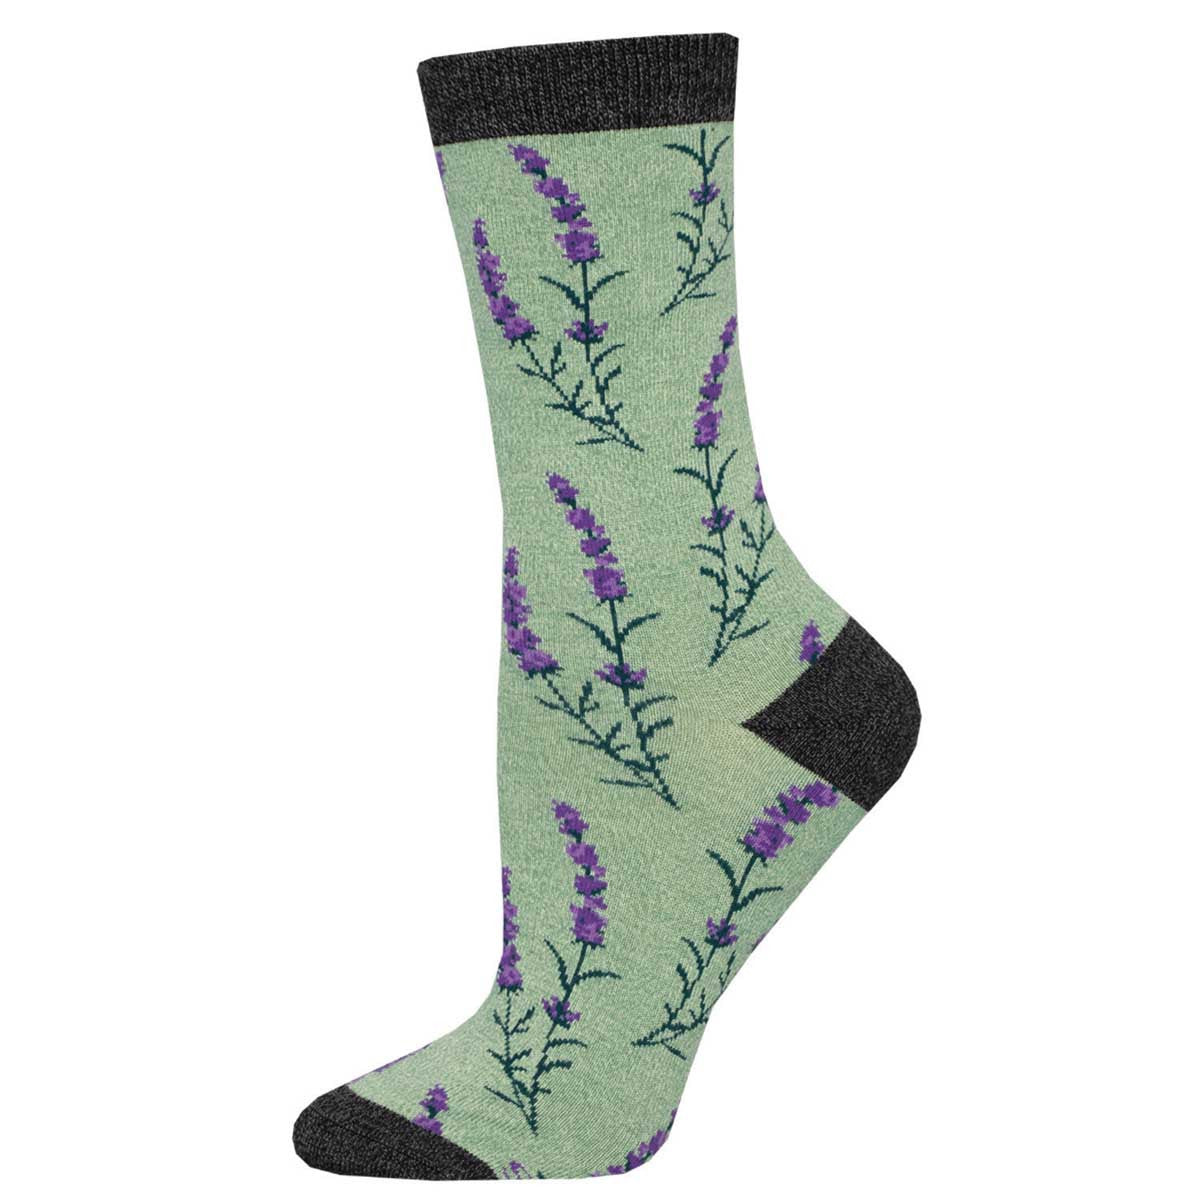 Lovely Lavender Socks